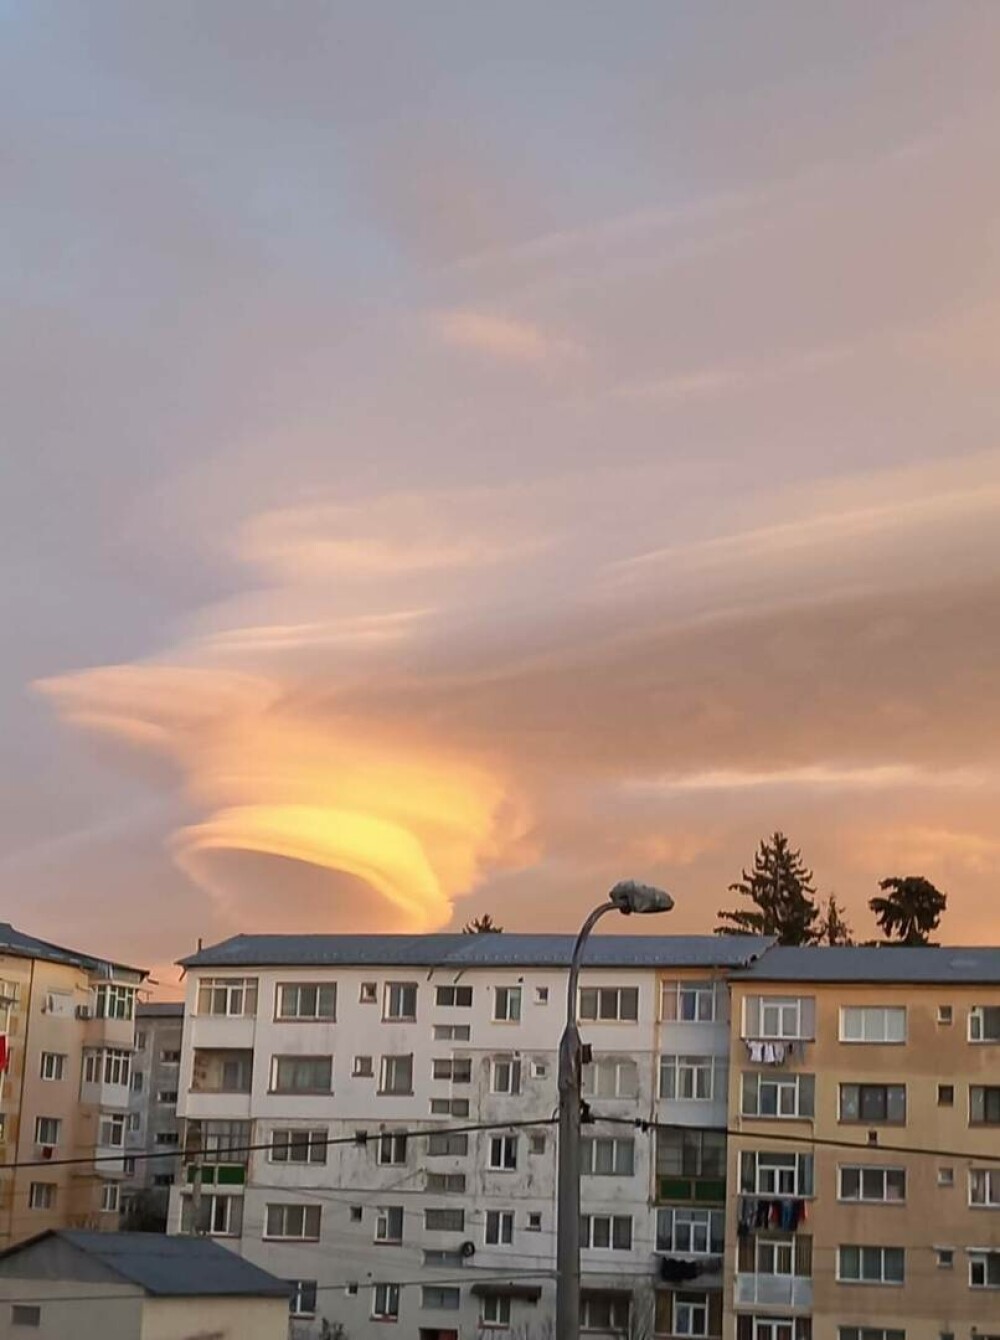 Norul OZN care i-a înspăimântat pe locuitorii din Câmpulung Muscel. Imaginea stranie a creat isterie GALERIE FOTO & VIDEO - Imaginea 13